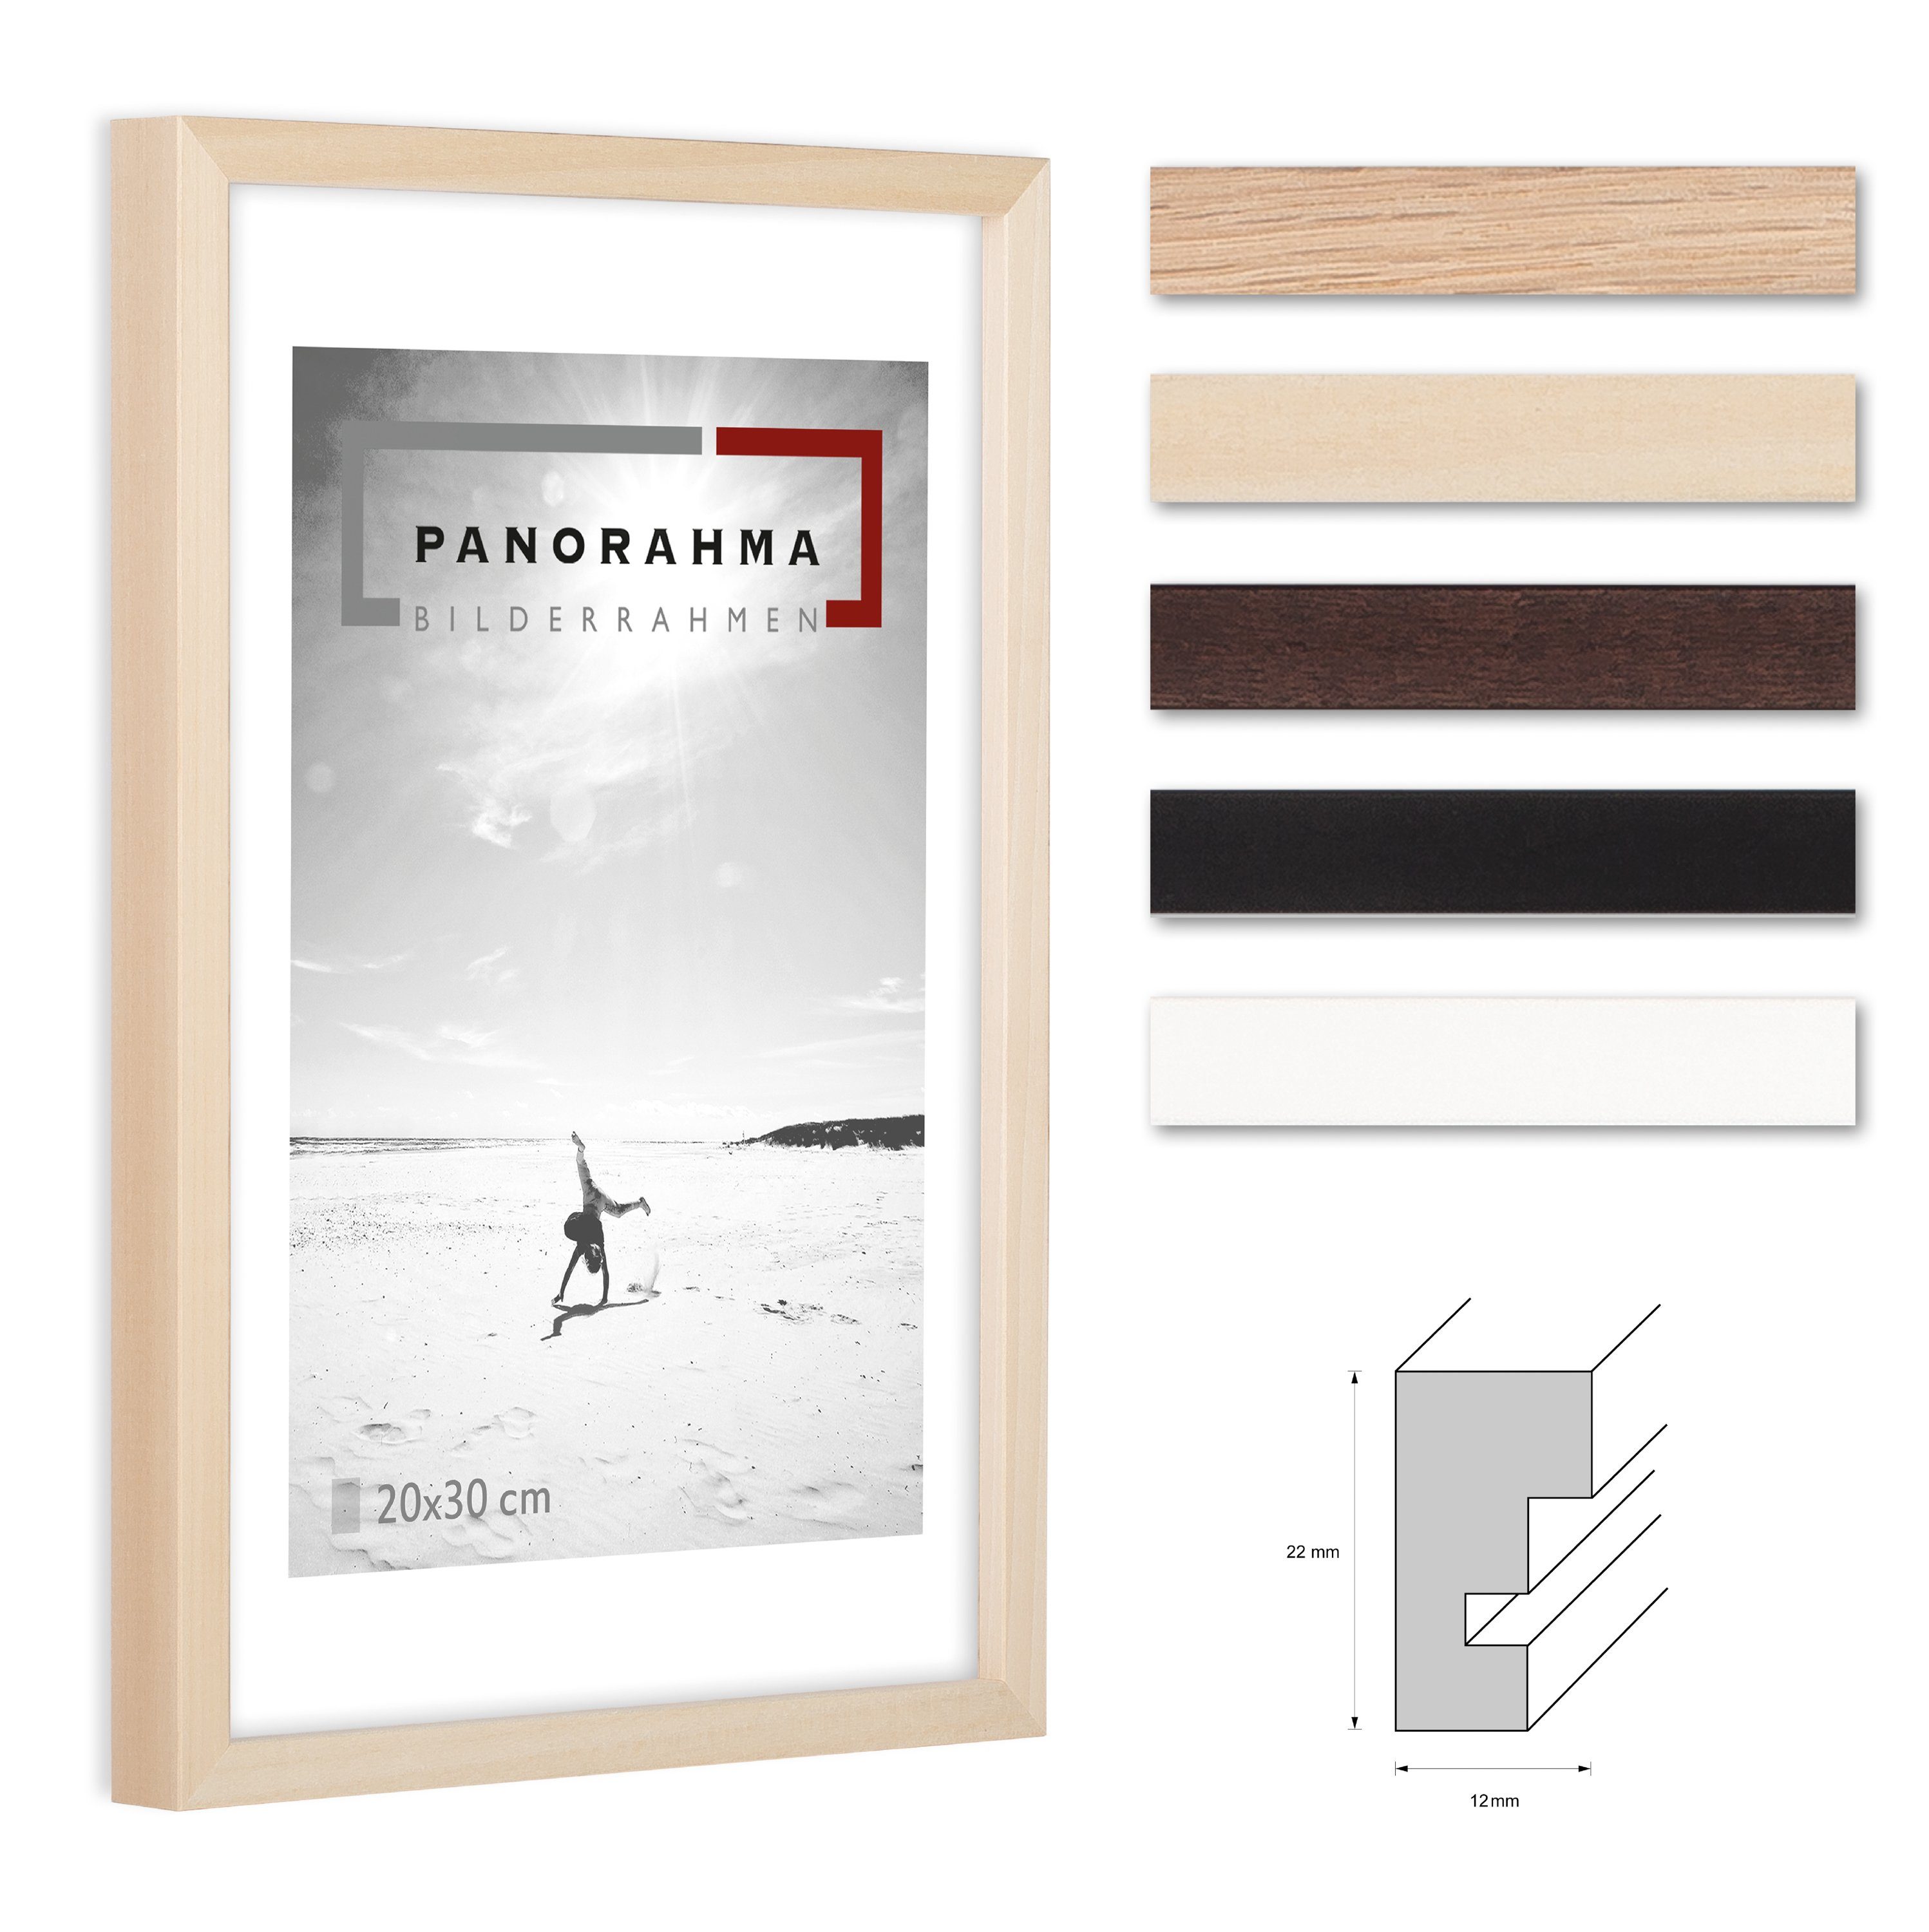 Panorahma Bilderrahmen Holz Bilderrahmen modern in fünf verschiedenen Farben mit Normalglas, für 1 Bilder, 1 Rahmen, Fotorahmen, echtes Glas Linde Natur